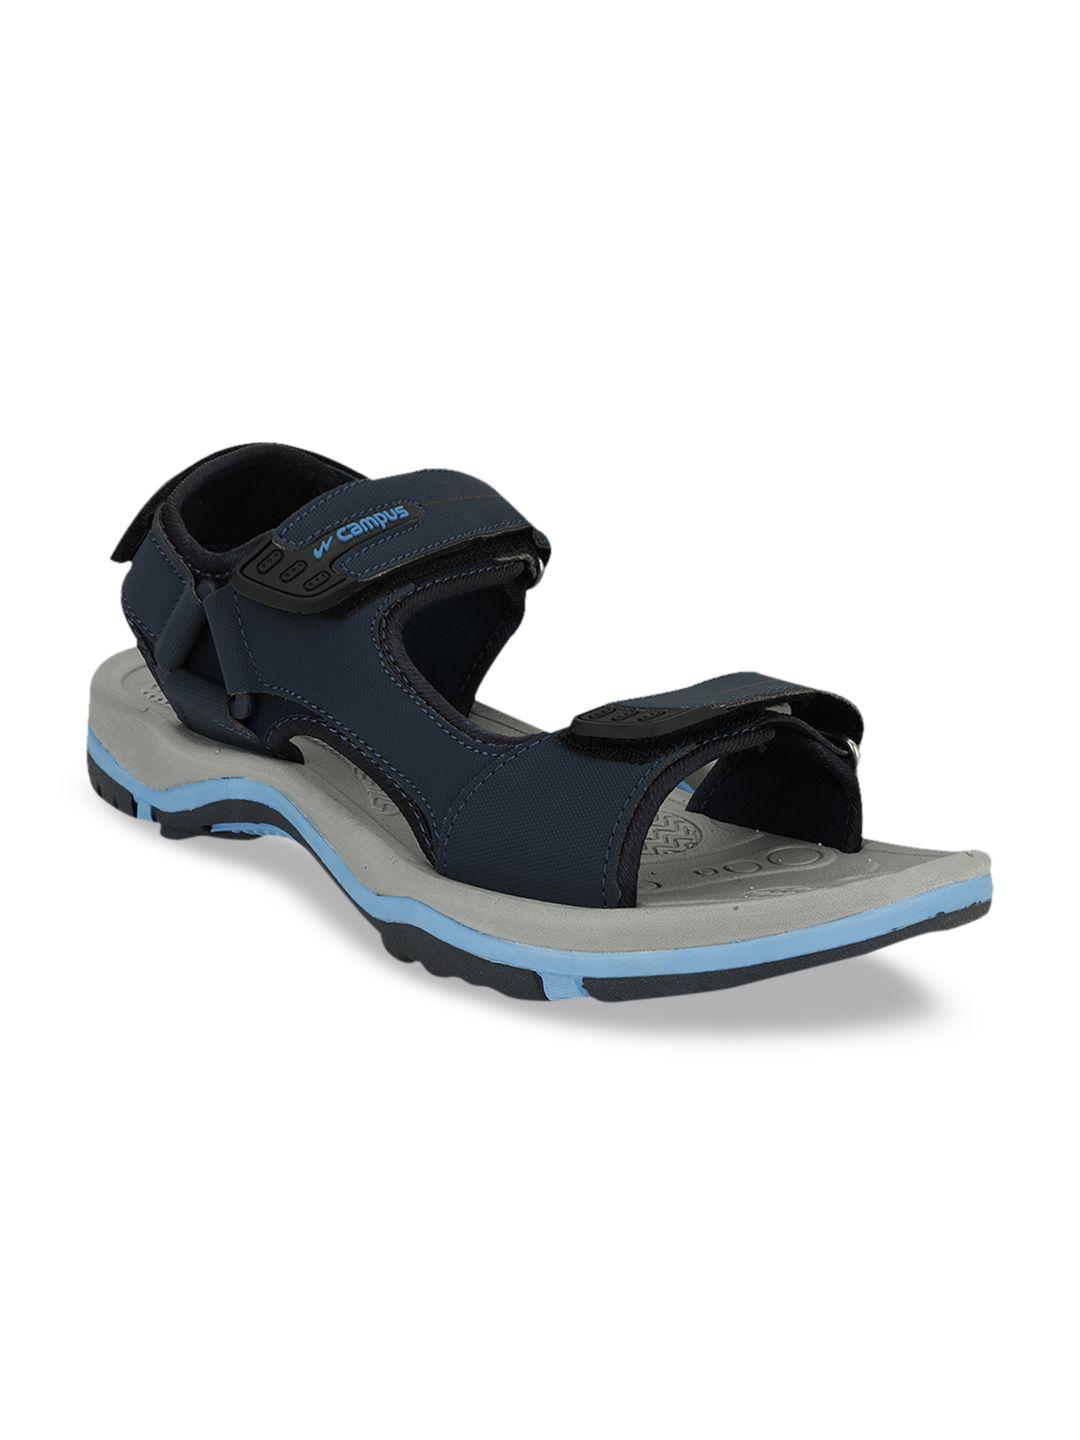 campus-men-sd-054-navy-blue-sports-sandals